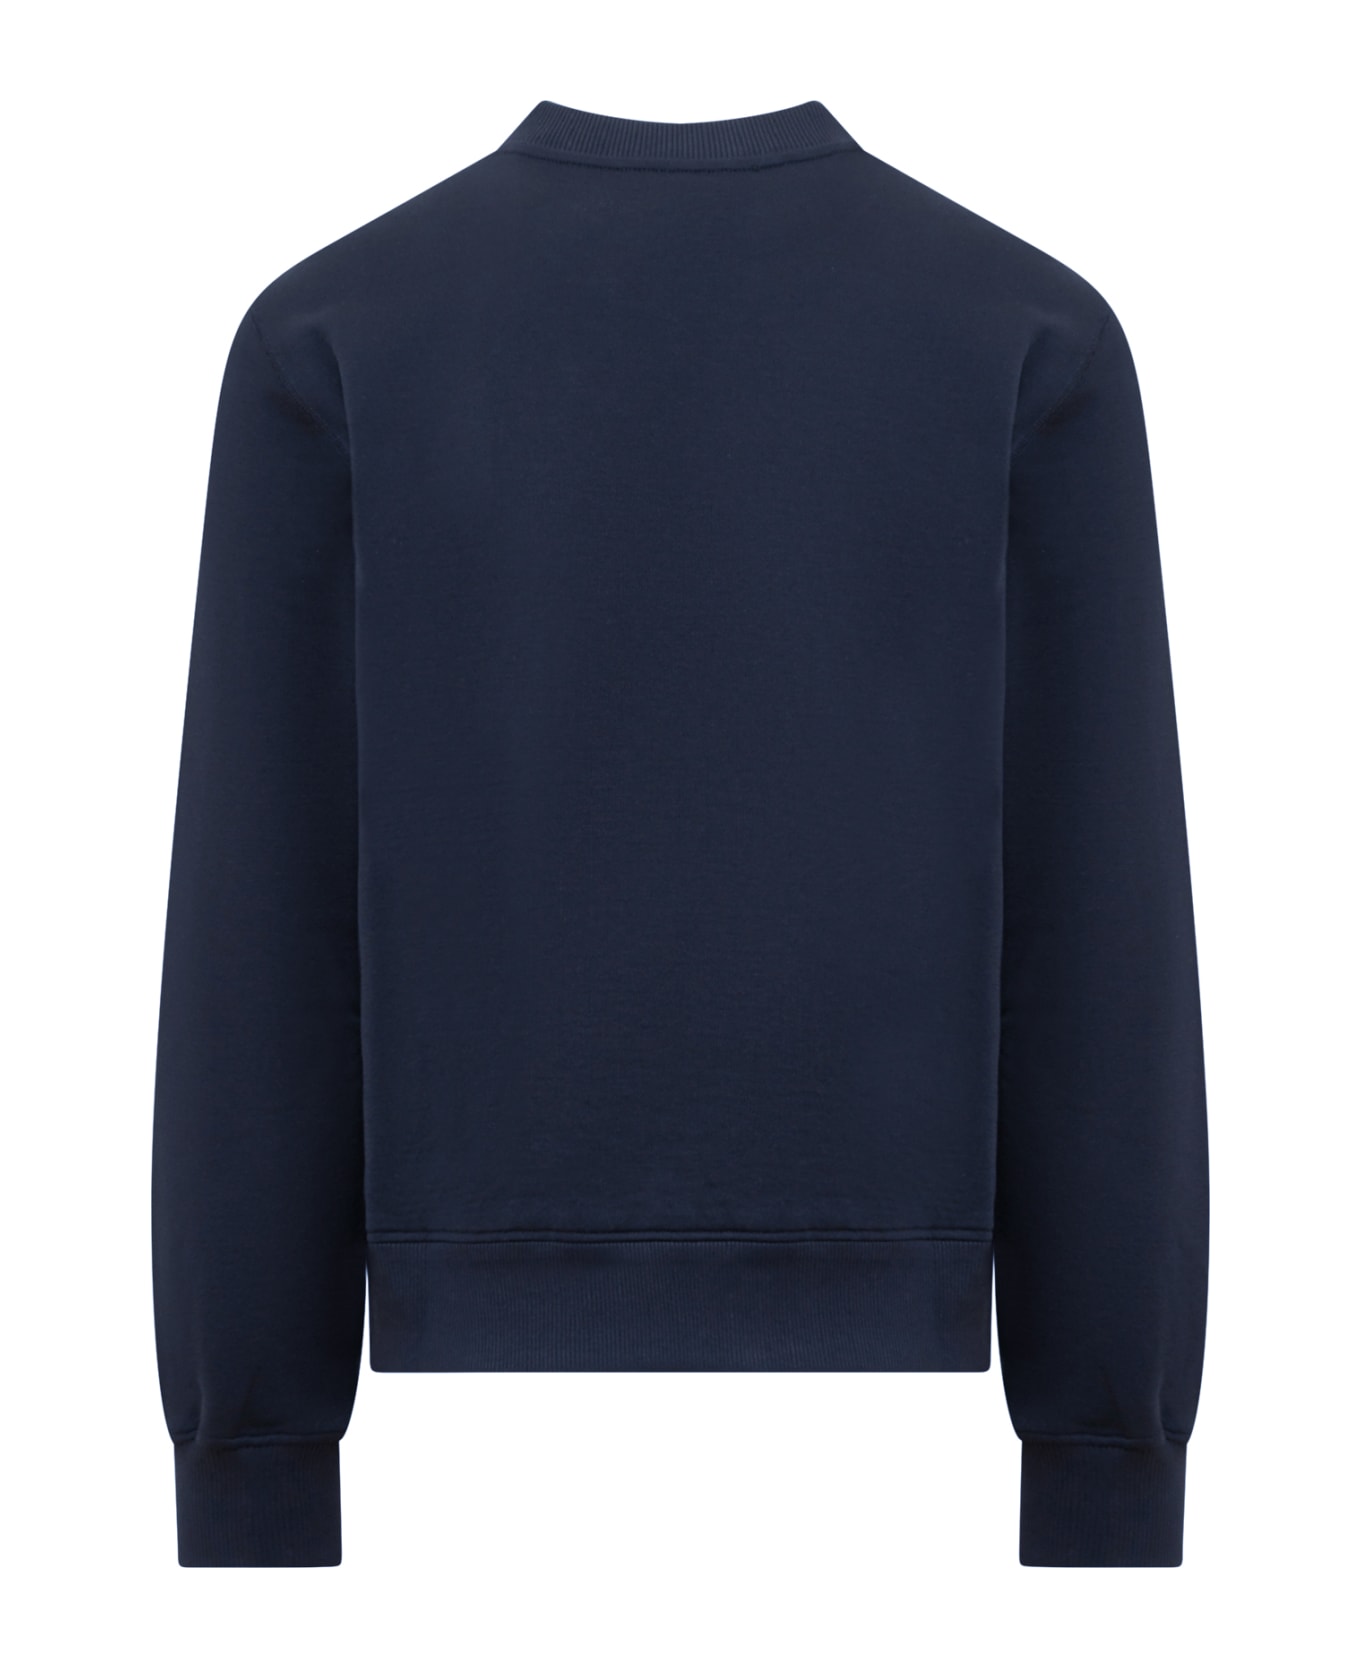 Dolce & Gabbana Cotton Crew-neck Sweatshirt - blue フリース